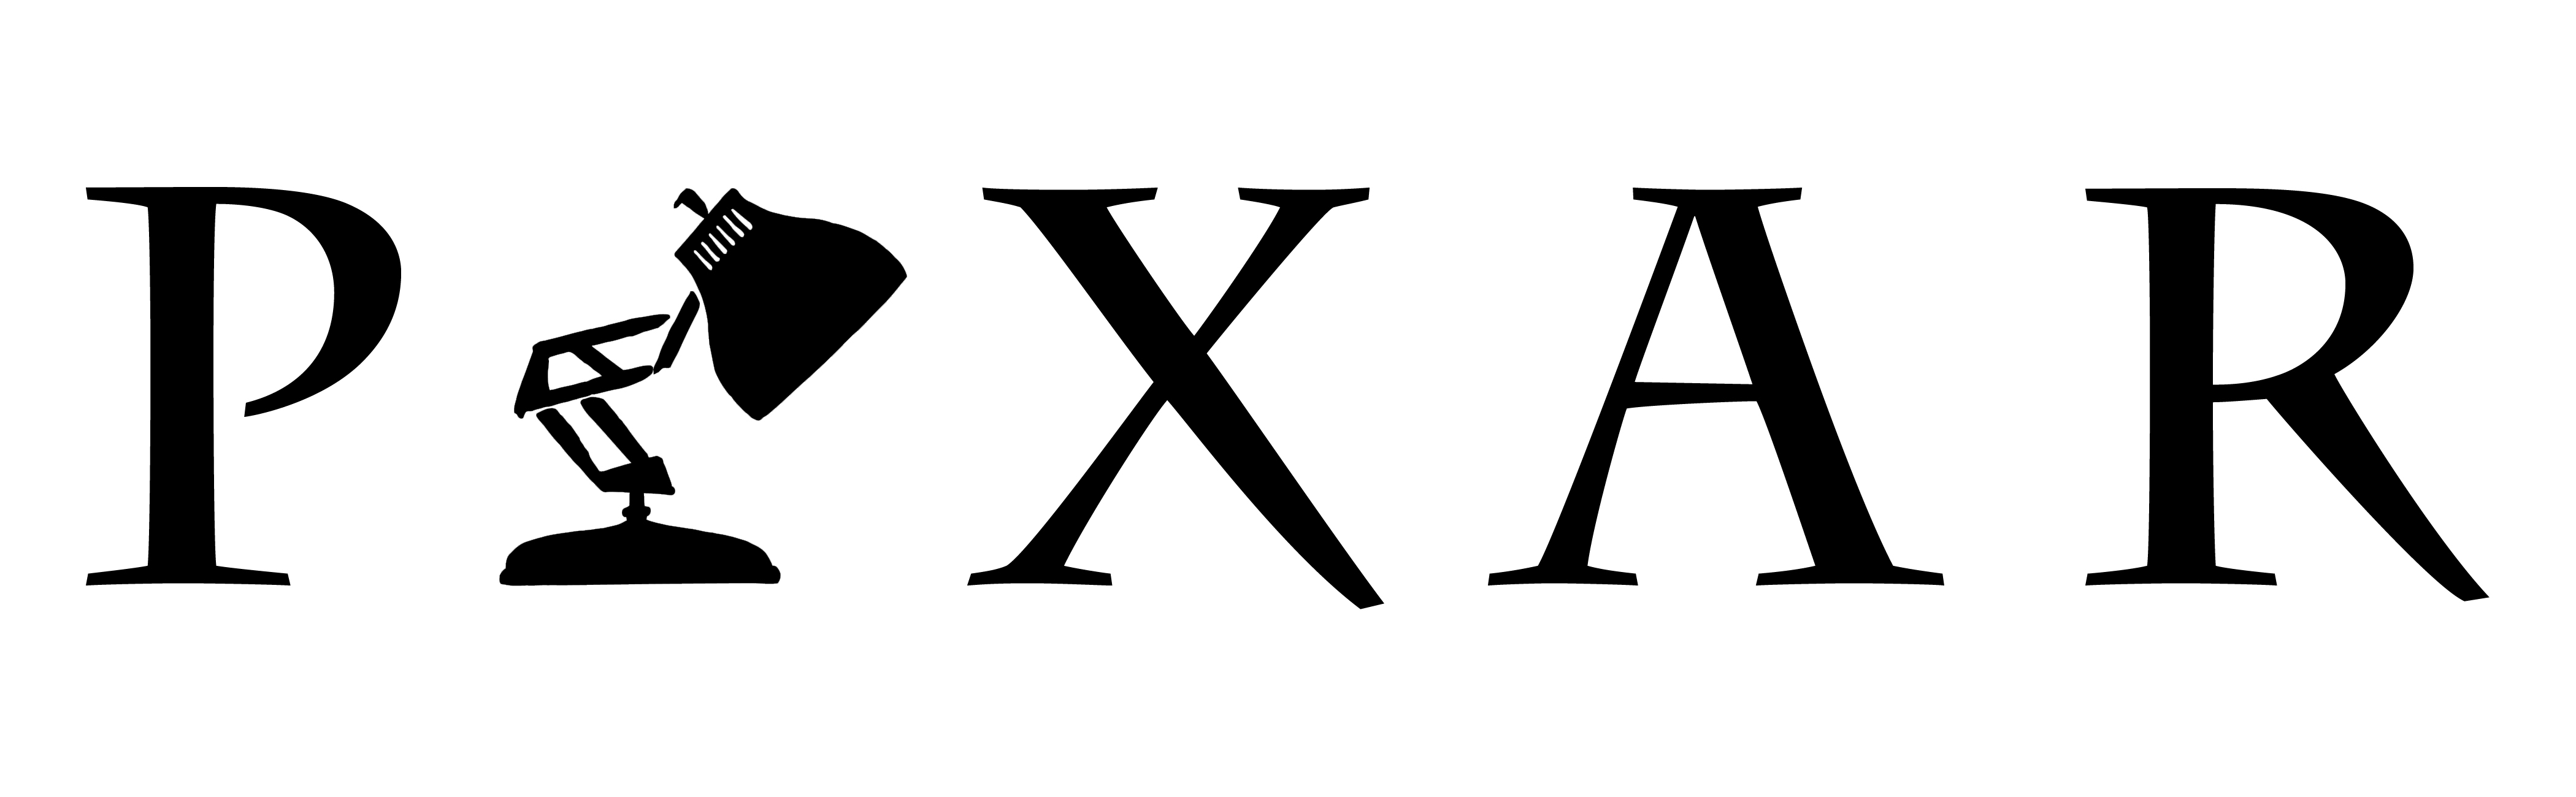 Pixar Logo Pixar Lamp - Pixar